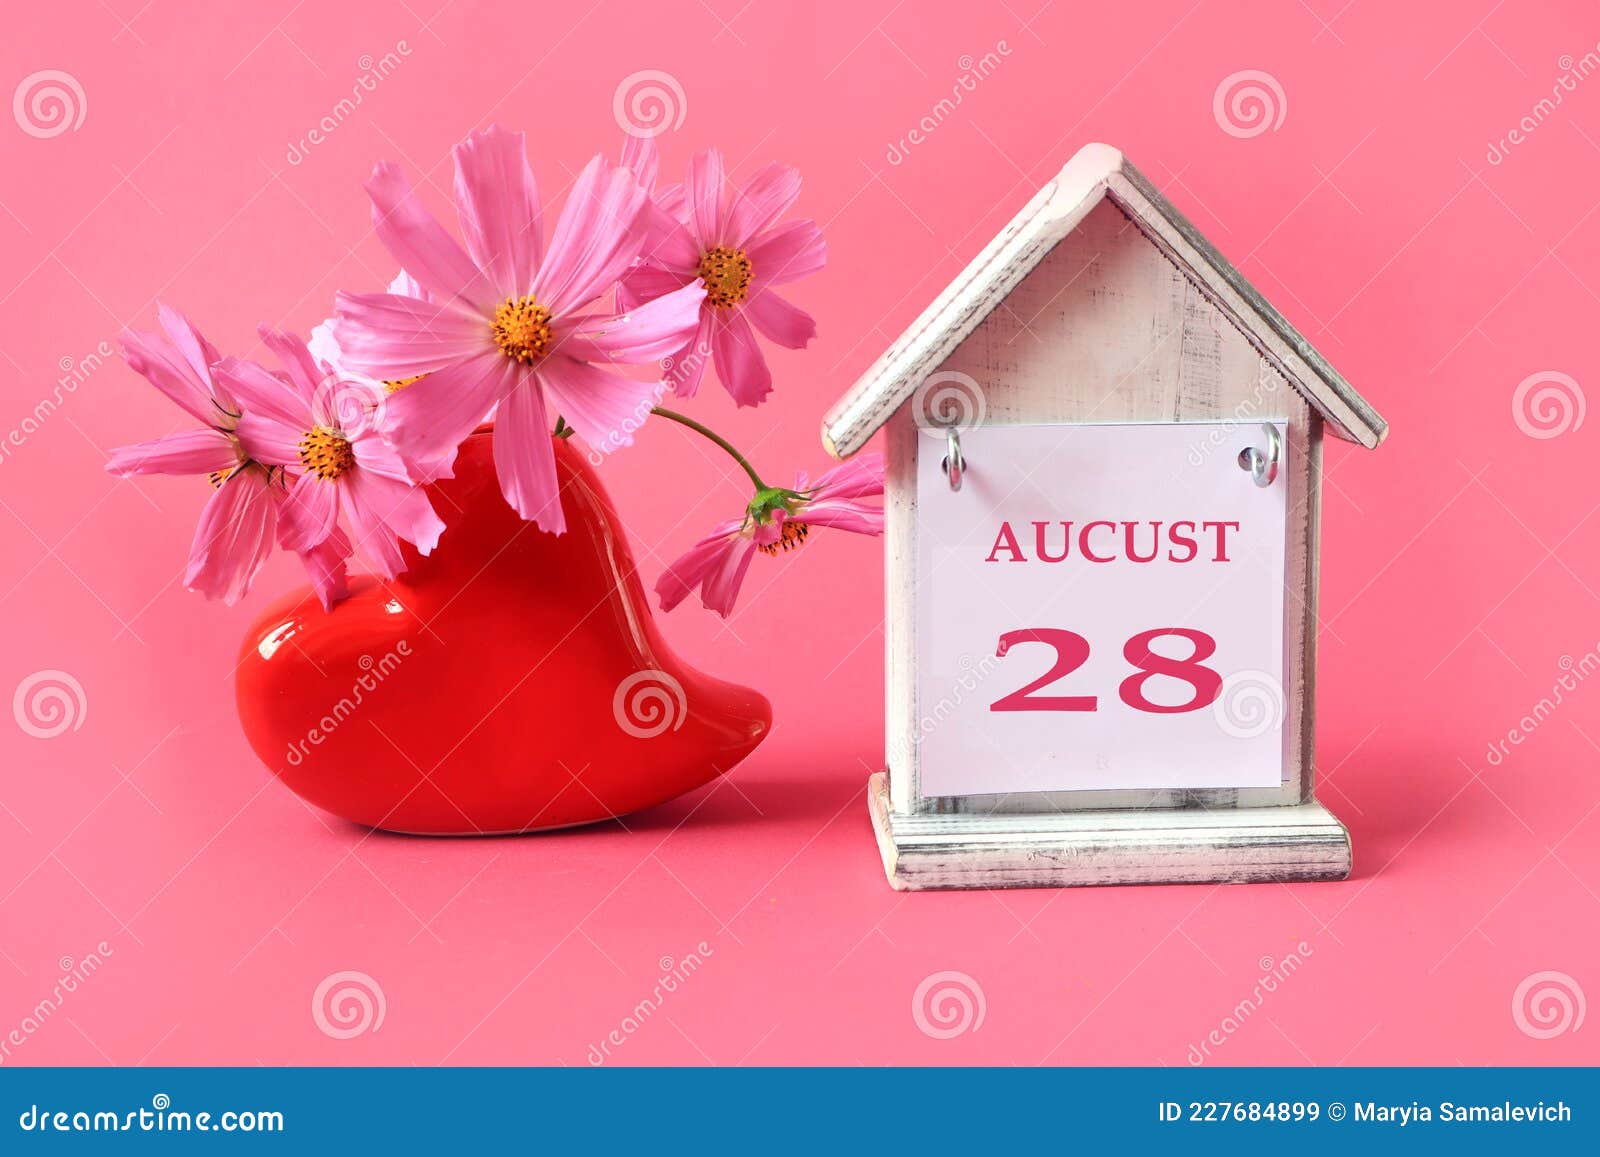 8月28日日历 8月的英文名是28 一杯茶本 一束粉红花库存图片 图片包括有背包 玻璃